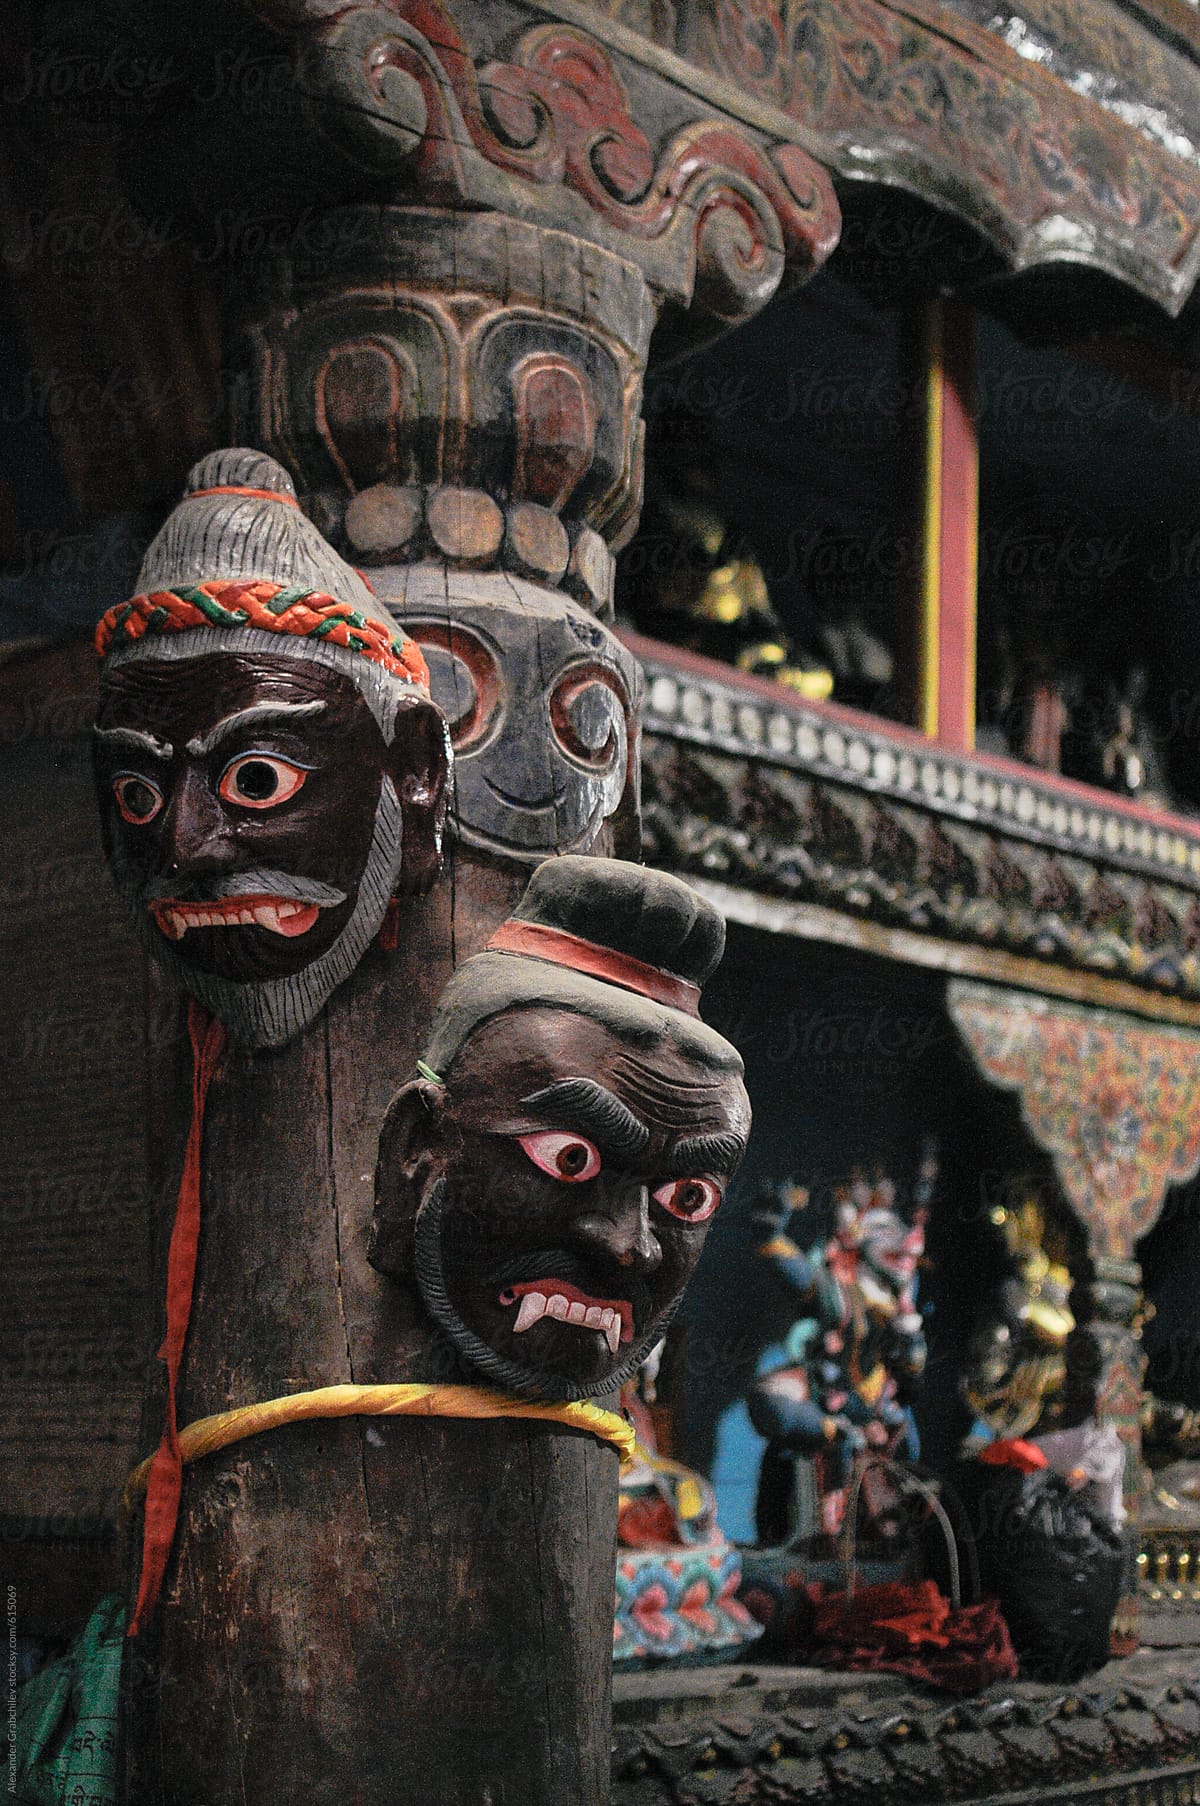 Tibetan Religious Masks In Old Monastery